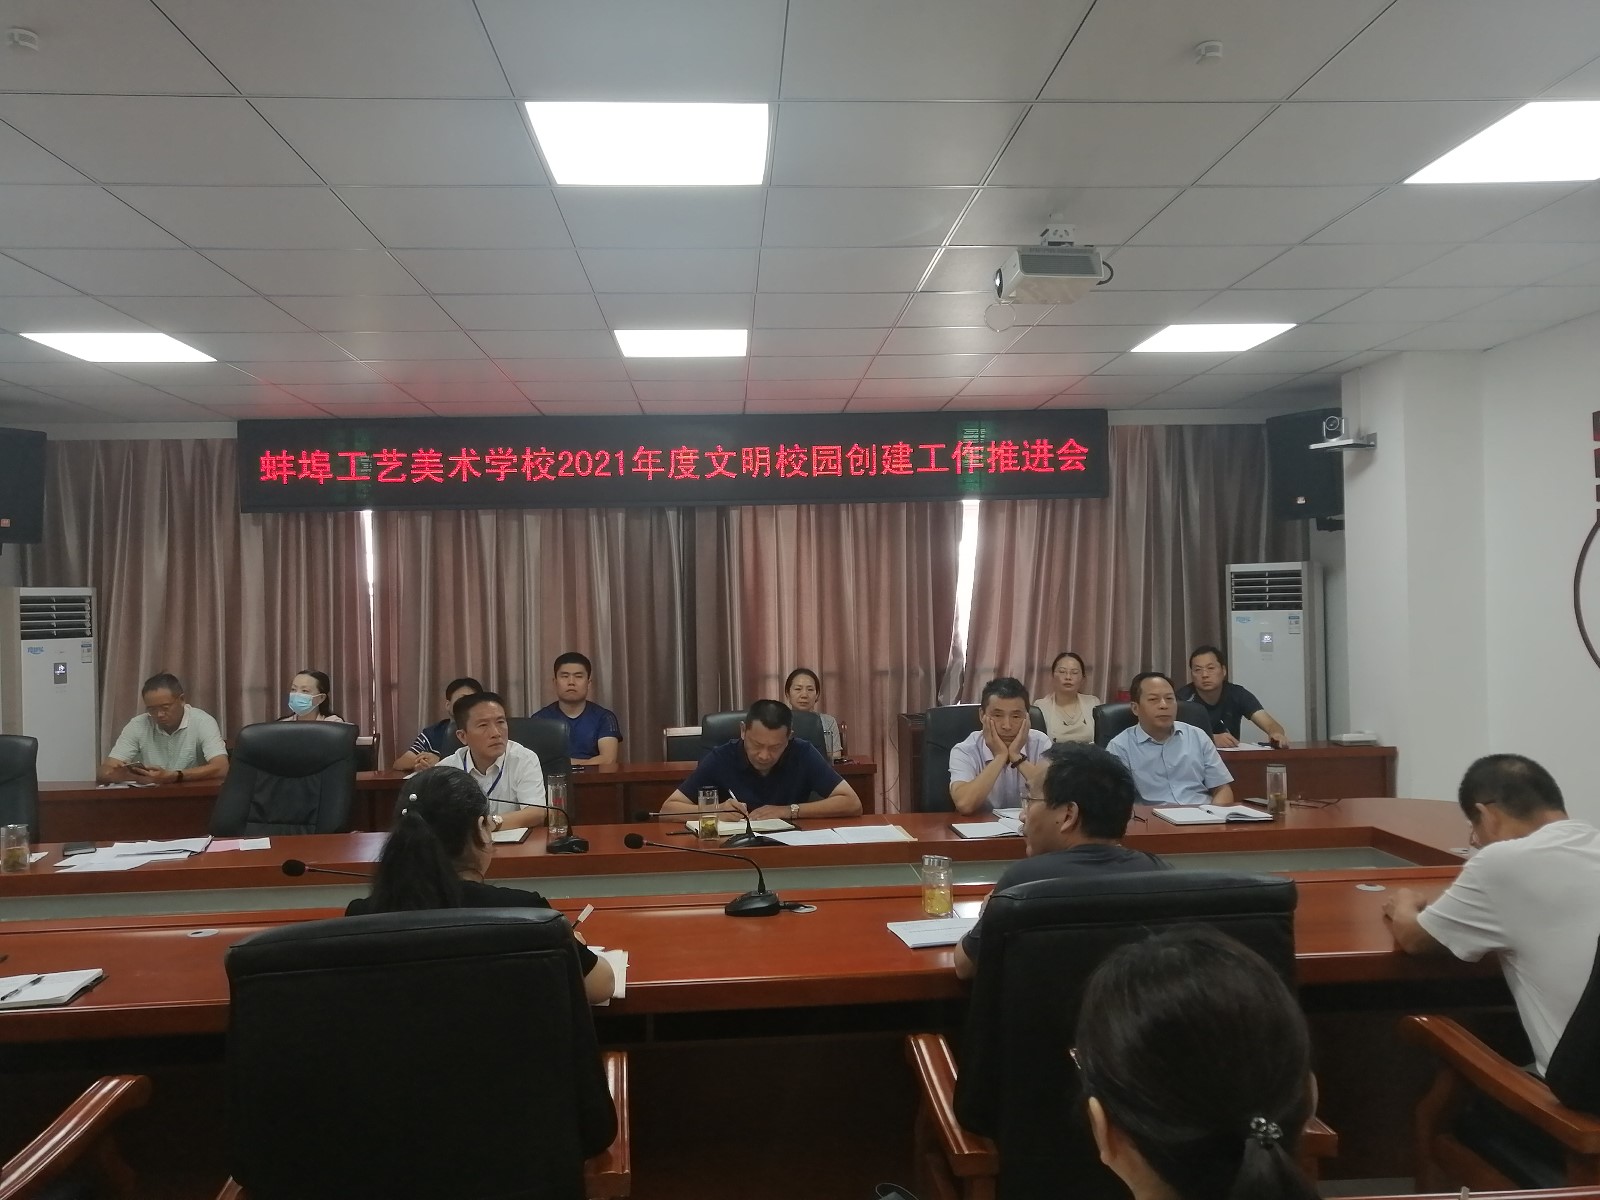 蚌埠工艺美术学校召开文明校园创建工作推进会（2021.9.8）-1.jpg